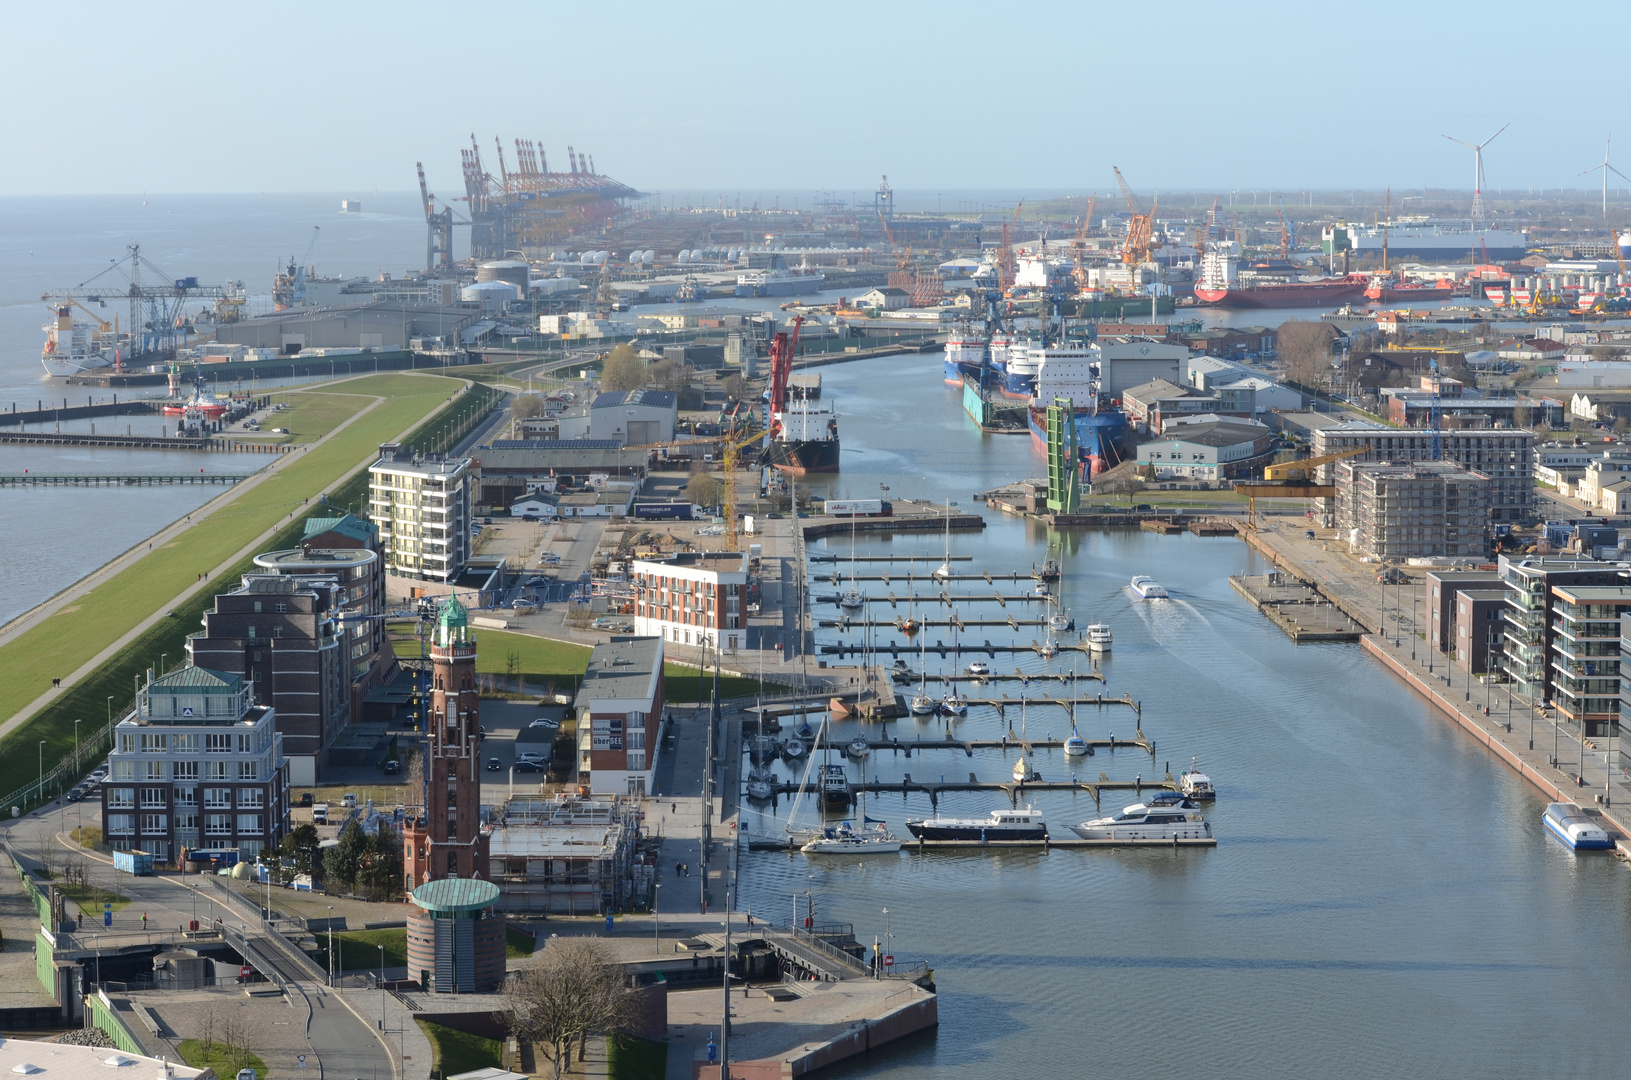 Bremerhaven aus luftiger Höhe